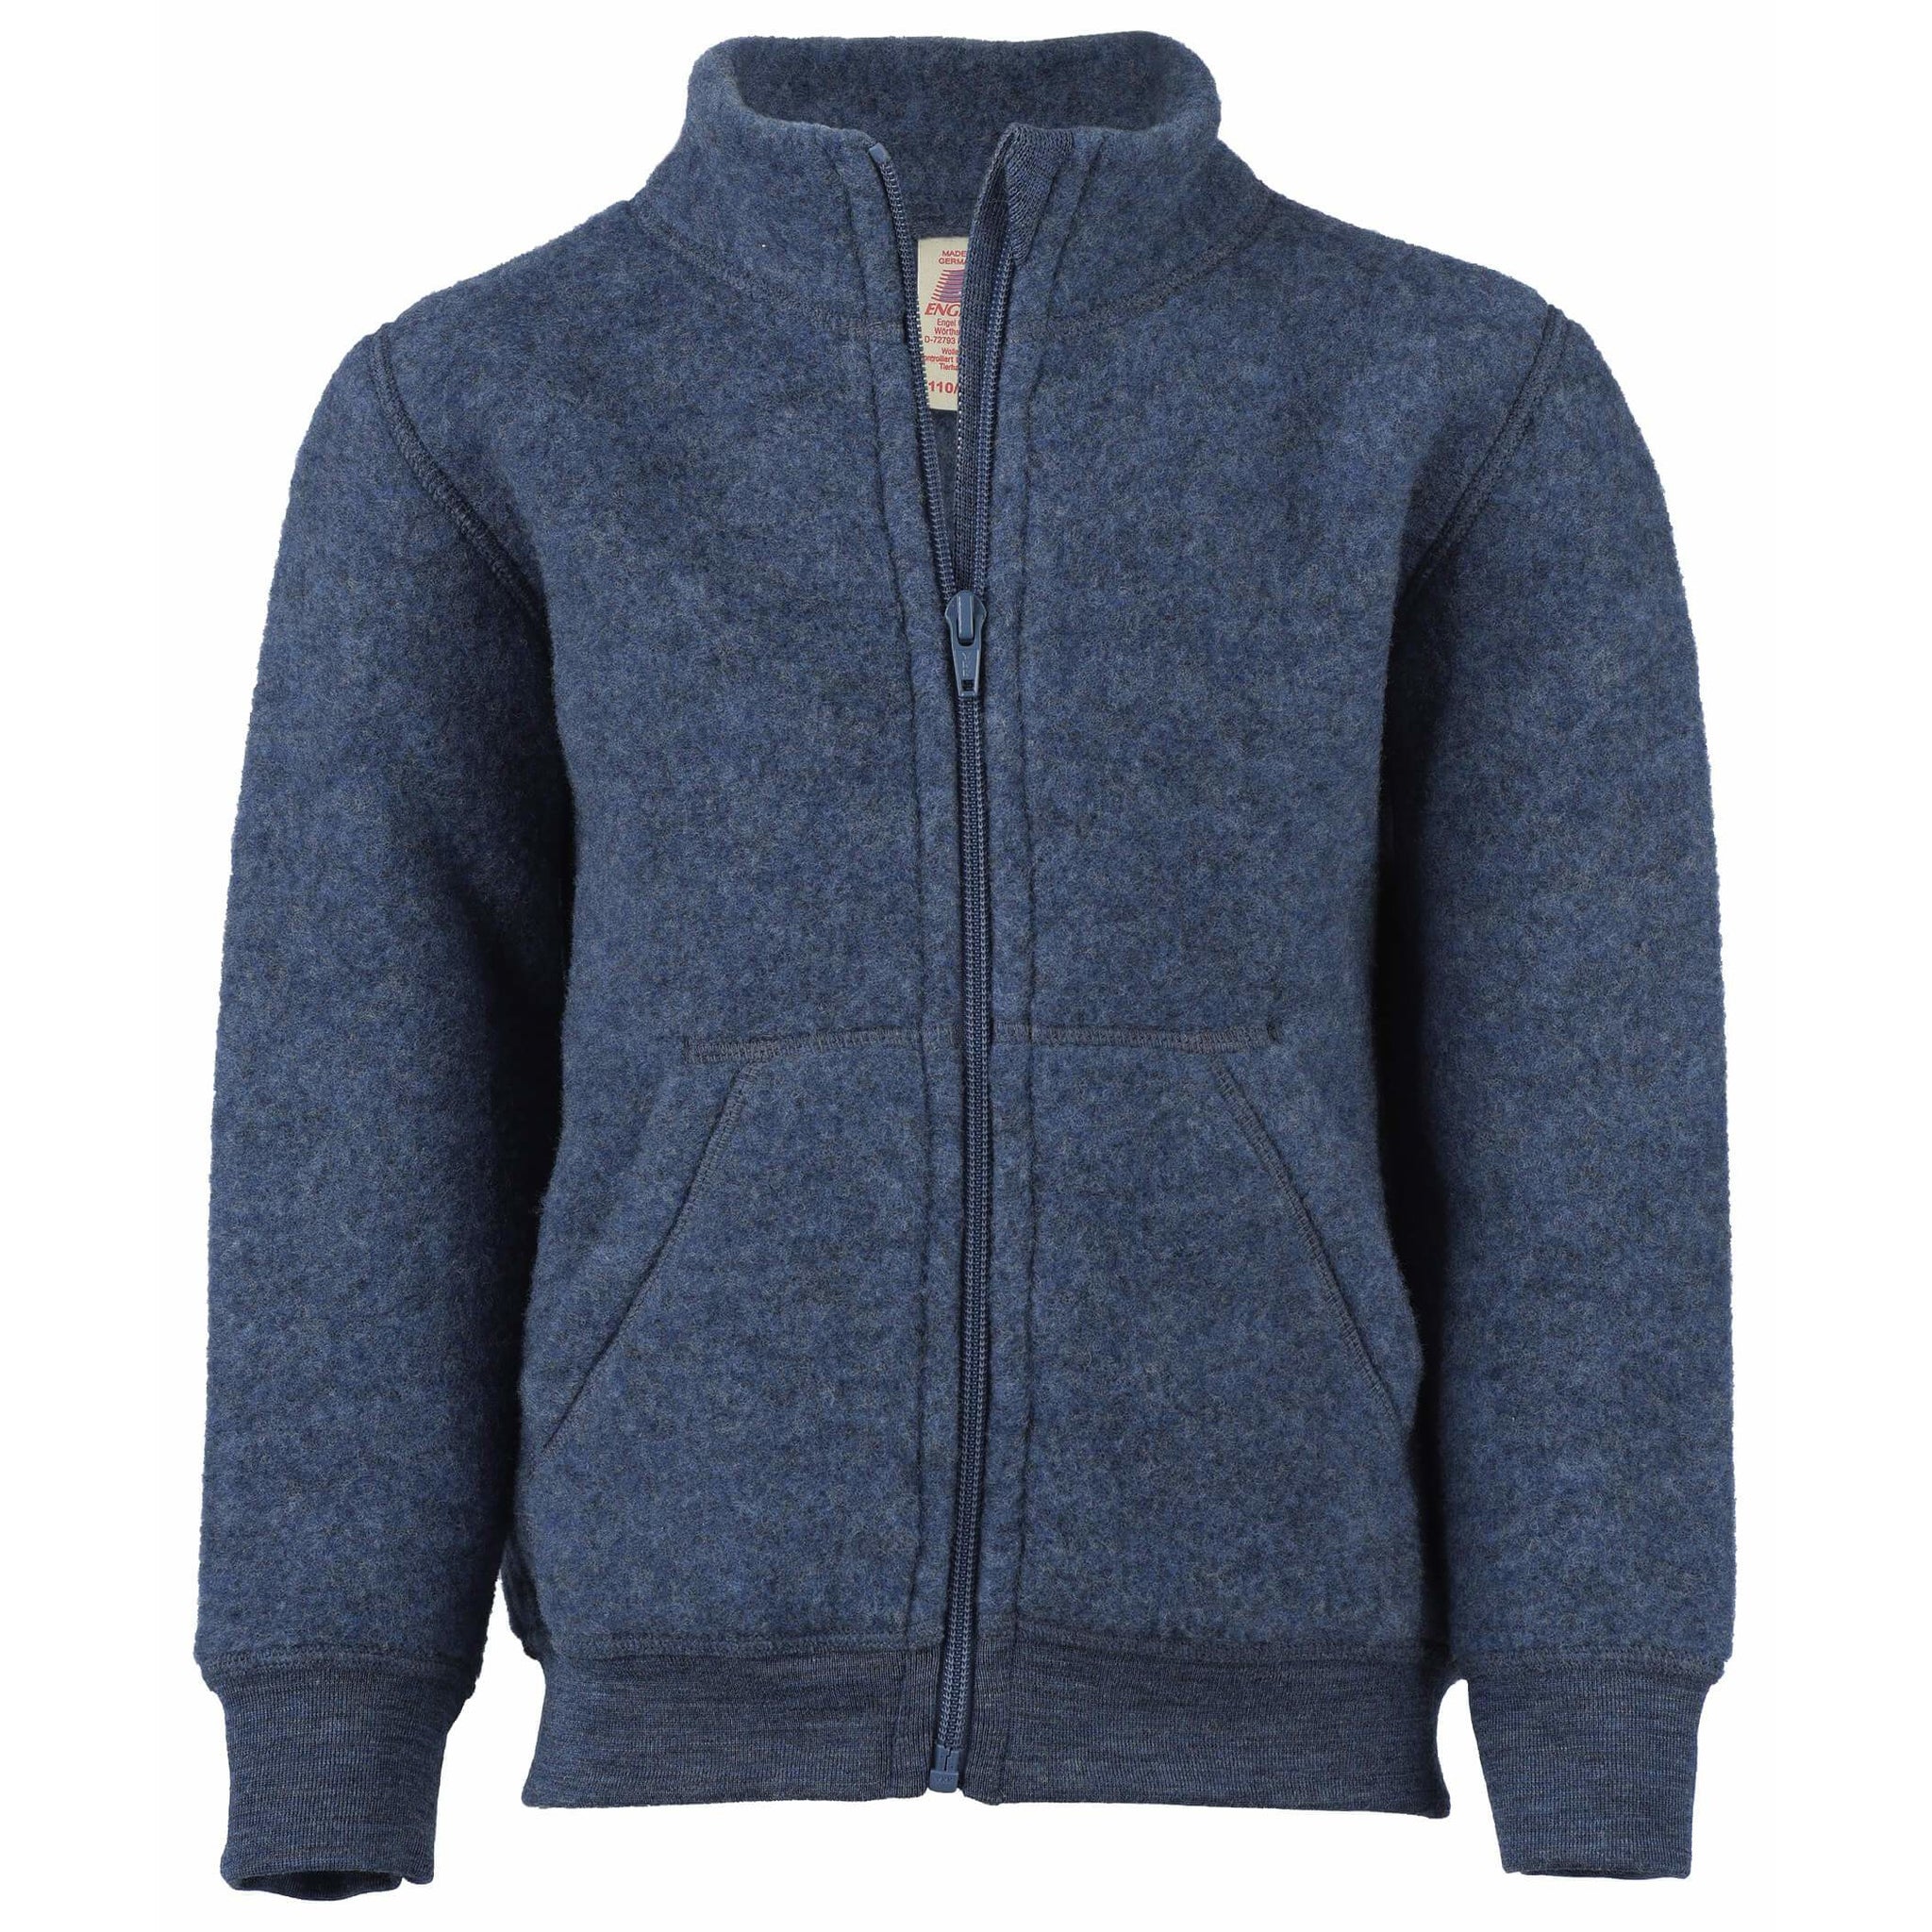 Jacheta copii si adolescenti Engel din lana fleece merinos 100% organica cu fermoar, Albastru Melange